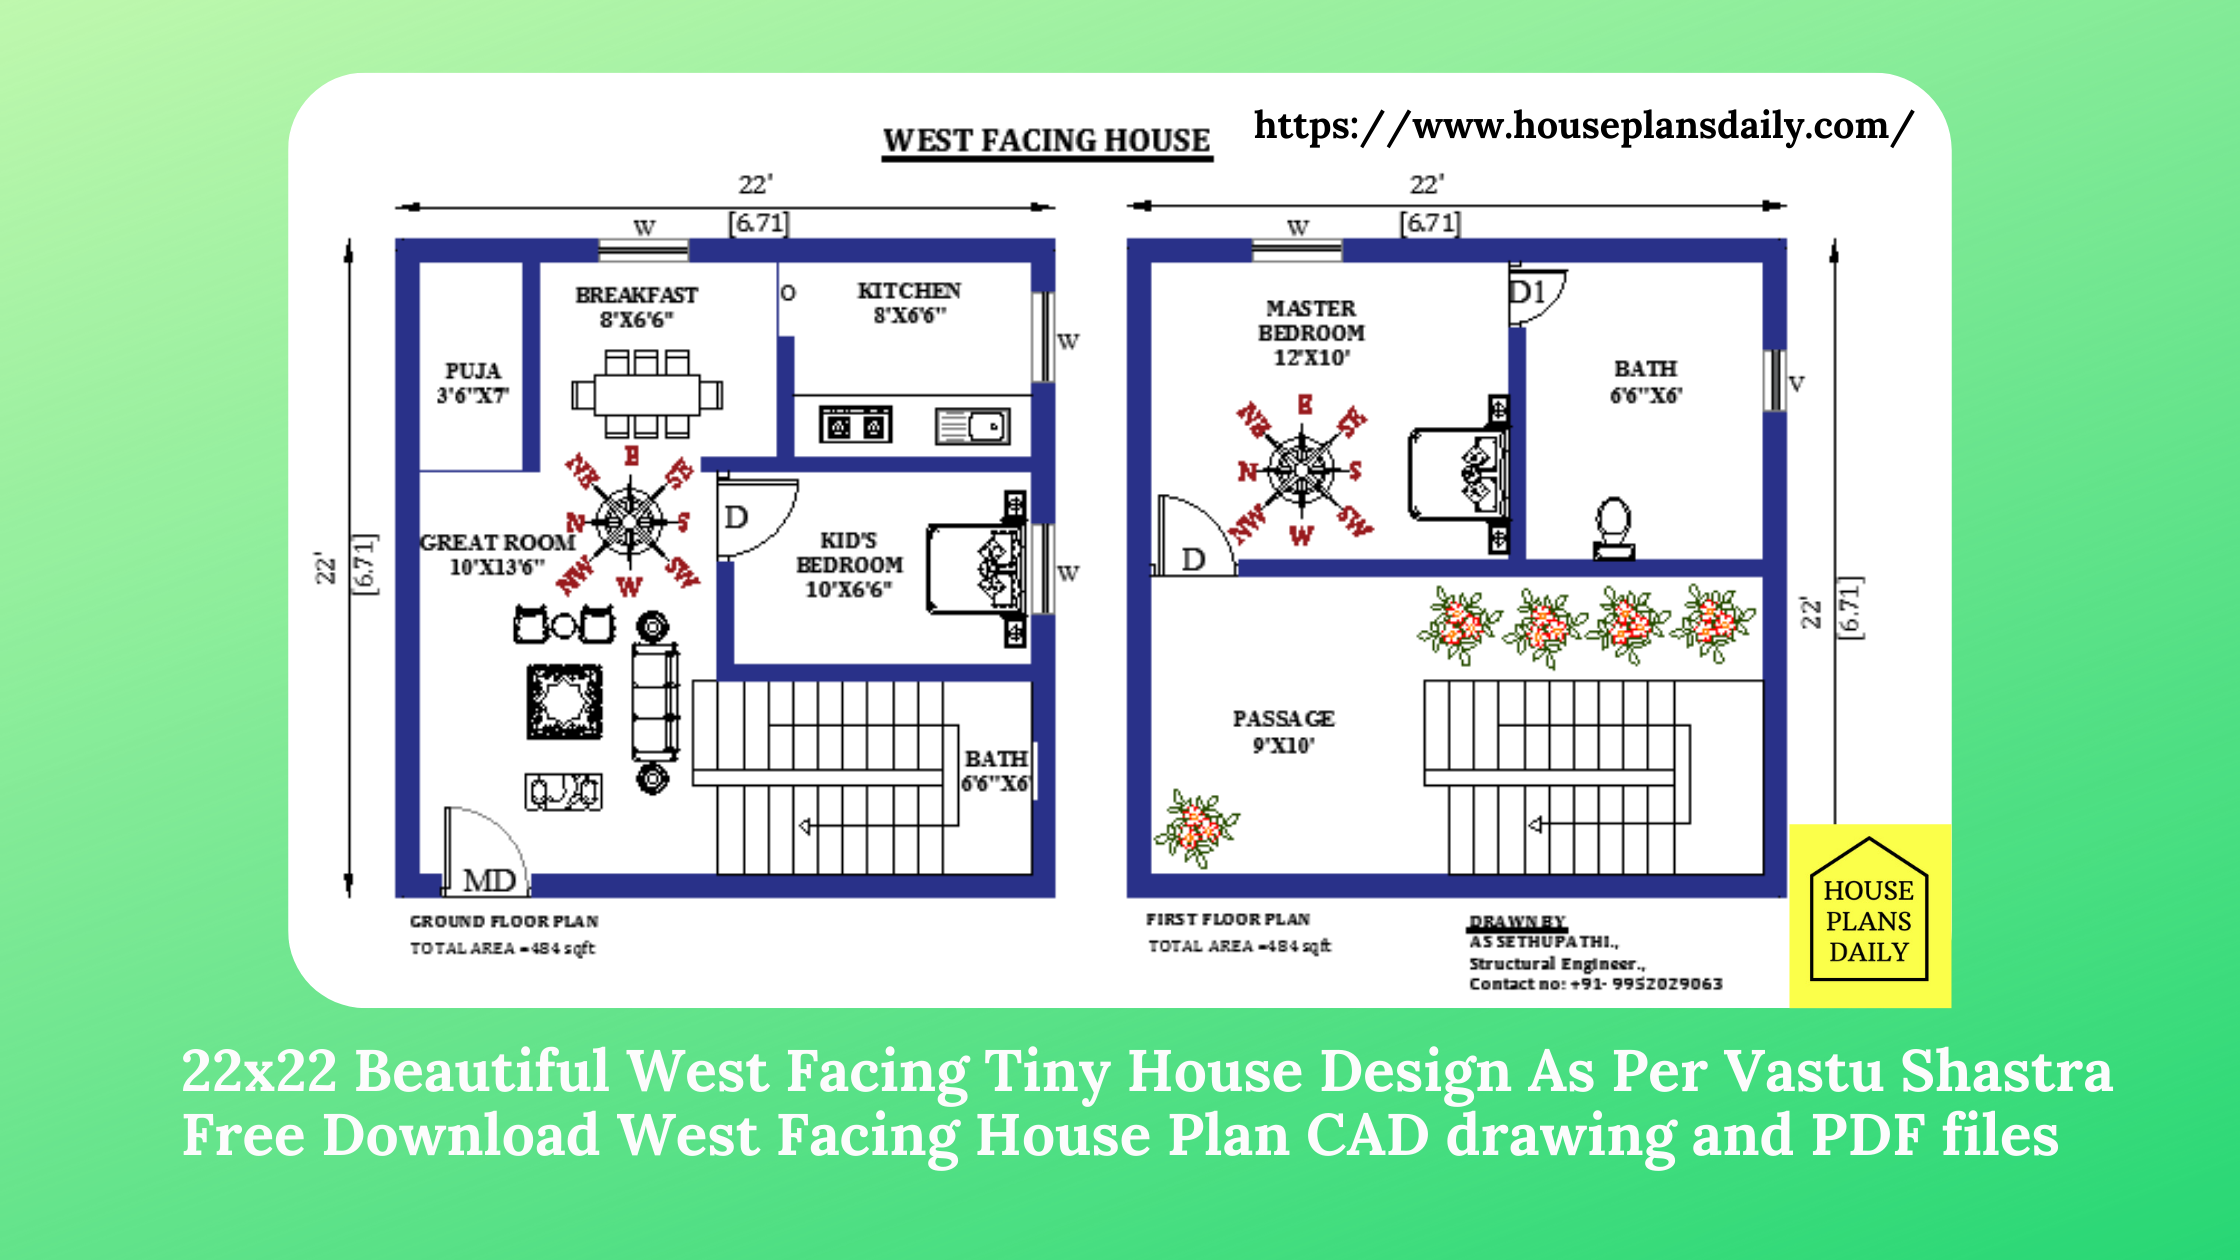 22x22 West Facing Tiny House Design As Per Vastu Shastra